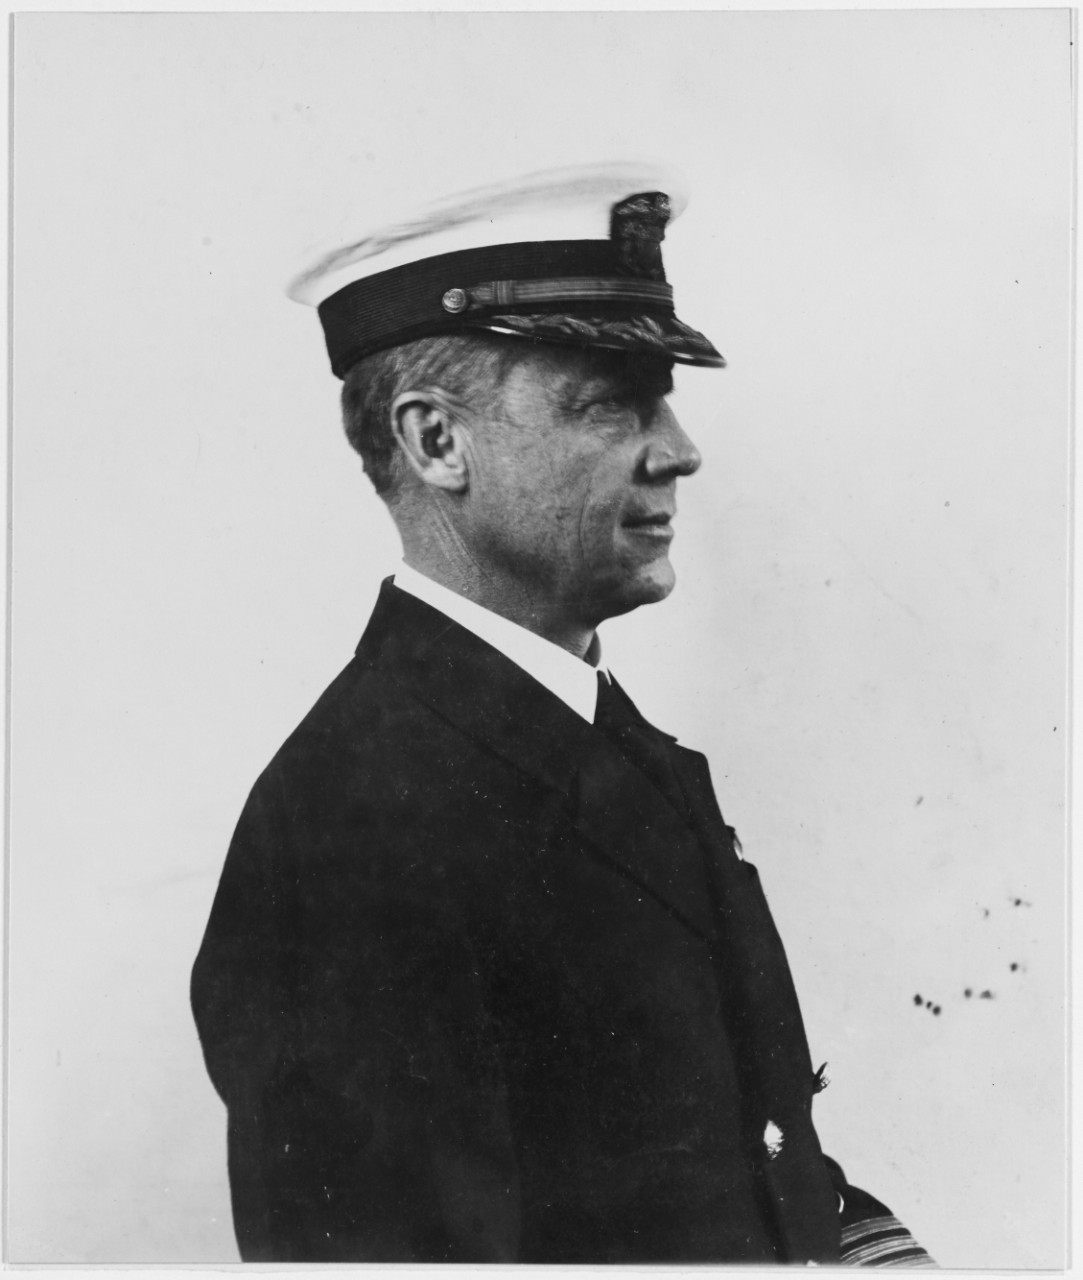 Captain Martin K. Metcalf, USN